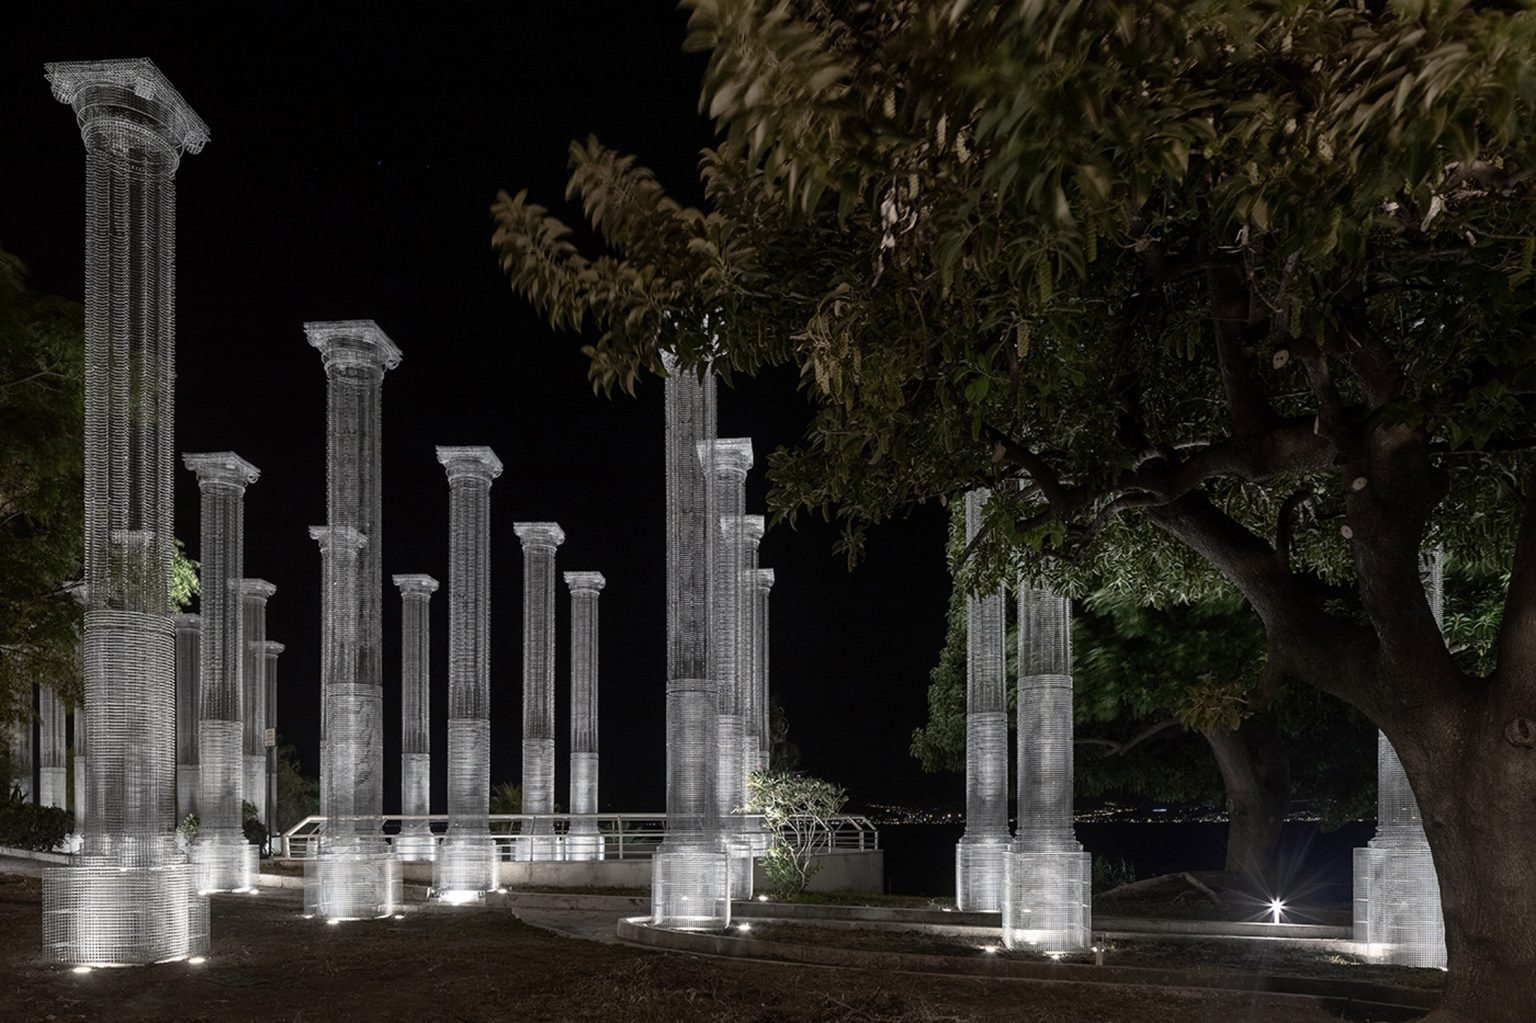 Vista de noche Columnas metalicas por Edoardo Tresoldi en la ciudad siciliana de Reggio Calabria